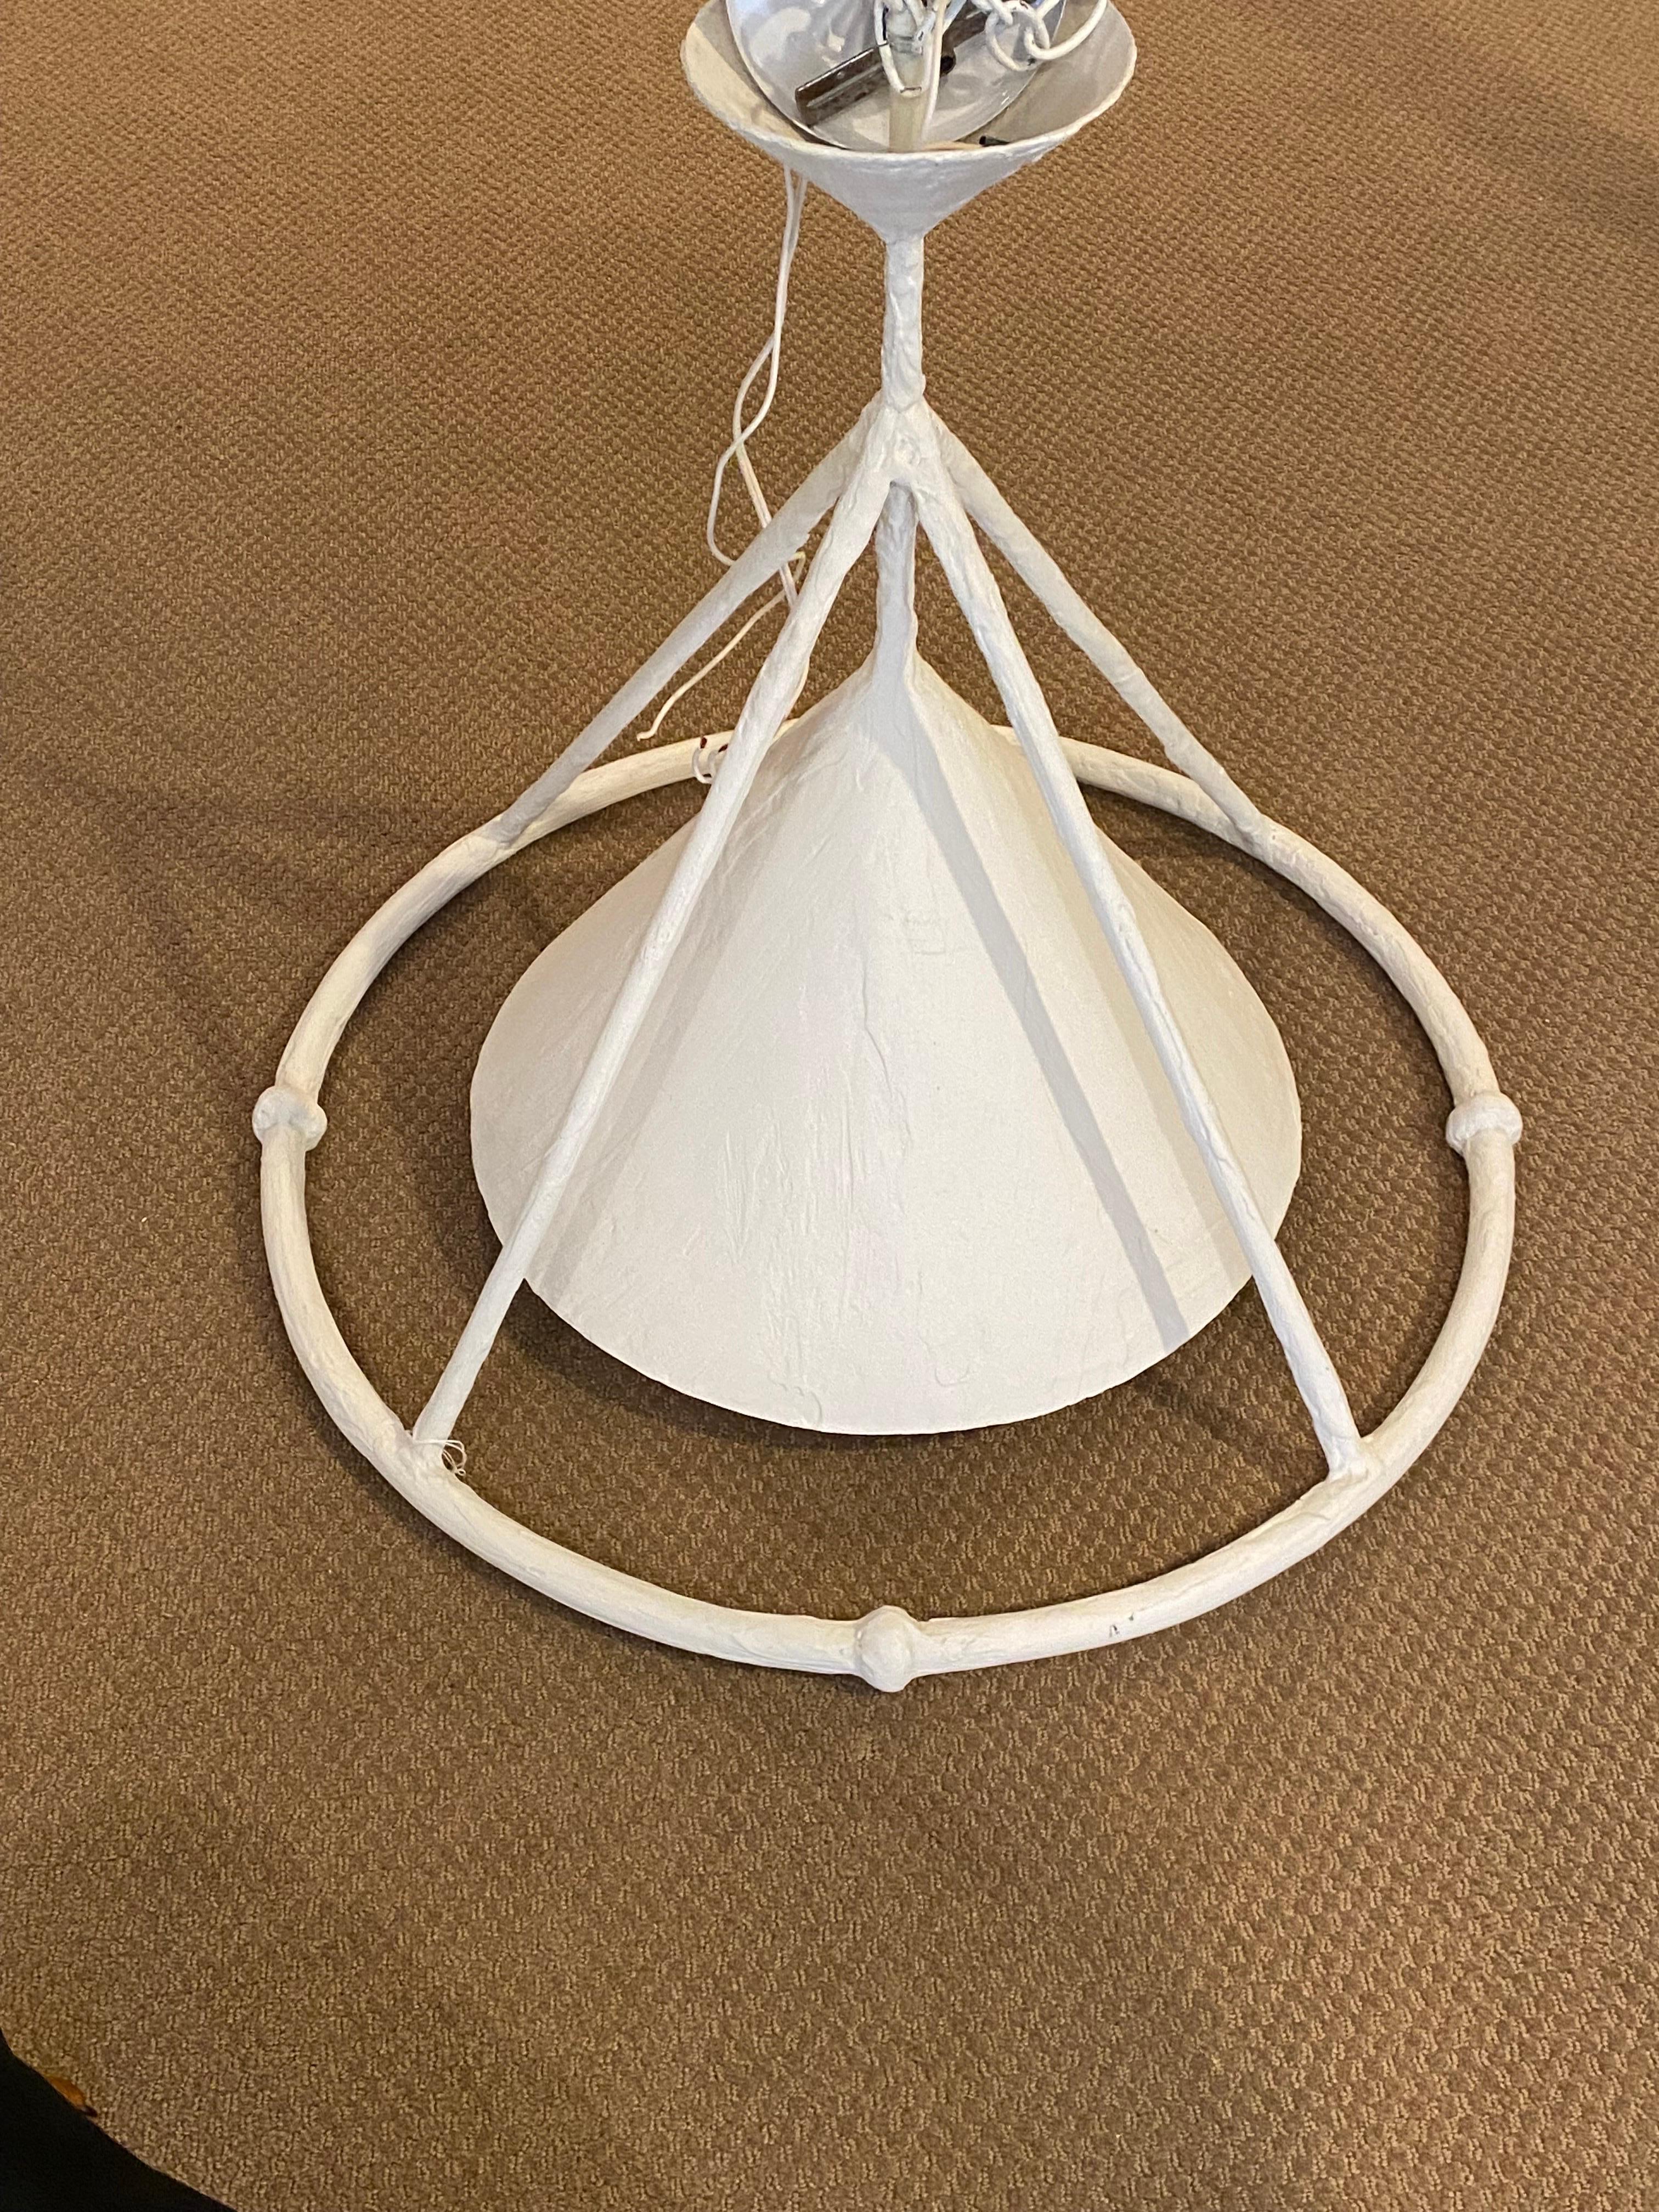 White Plaster Custom Hanging Lighting Fixture by Paul Ferrante  4